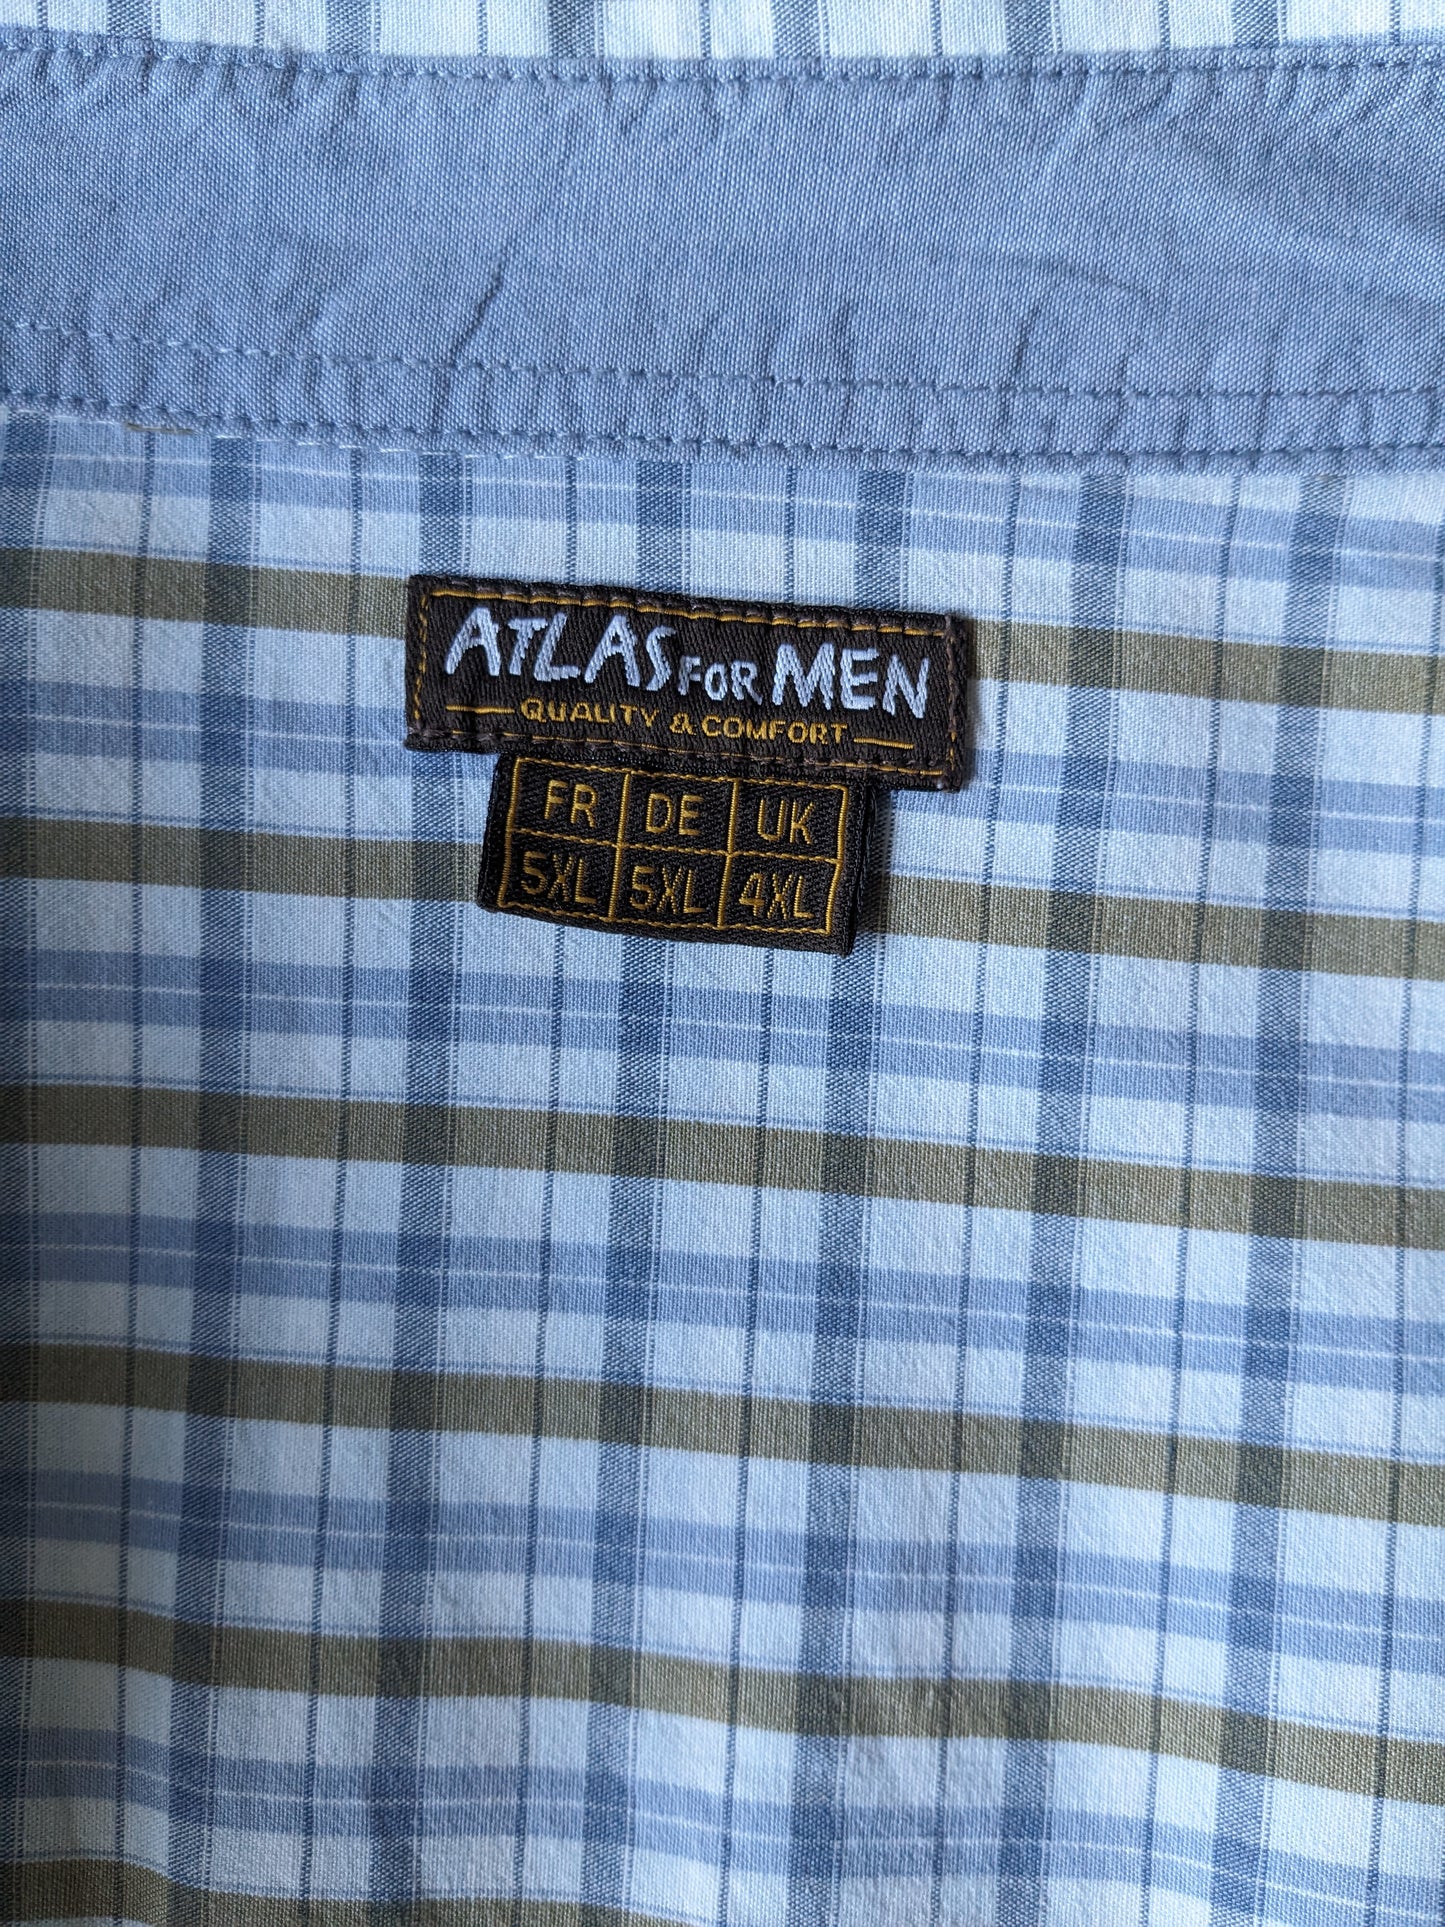 Atlas for Men overhemd. Blauw Wit Bruin geruit. Maat 5XL / XXXXXL.